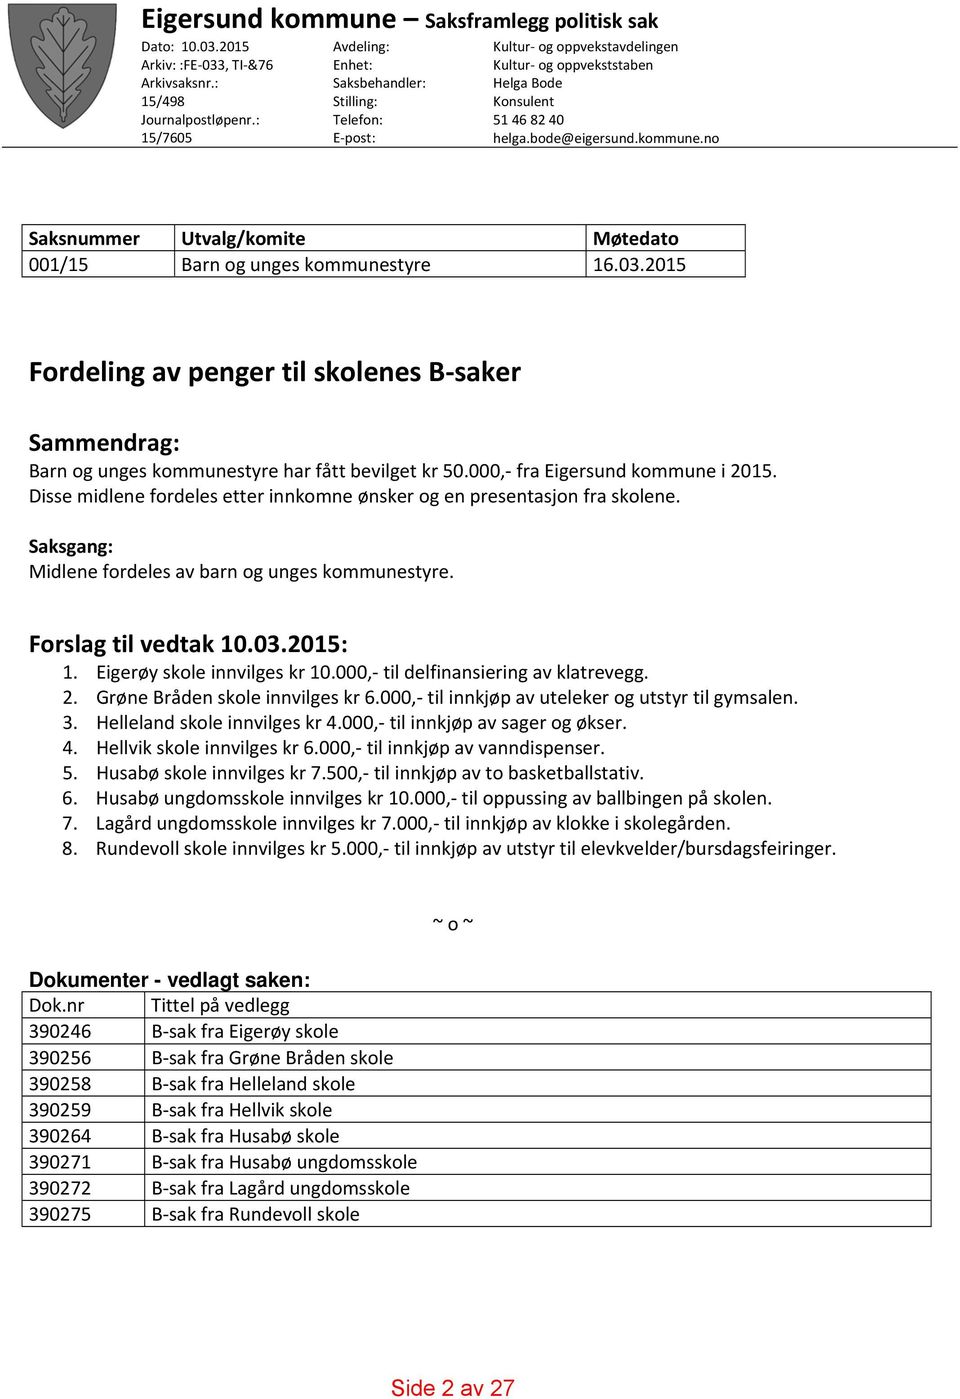 Eigerøy skole innvilges kr 10.000, til delfinansiering av klatrevegg. 2. Grøne Bråden skole innvilges kr 6.000, til innkjøp av uteleker og utstyr til gymsalen. 3. Helleland skole innvilges kr 4.